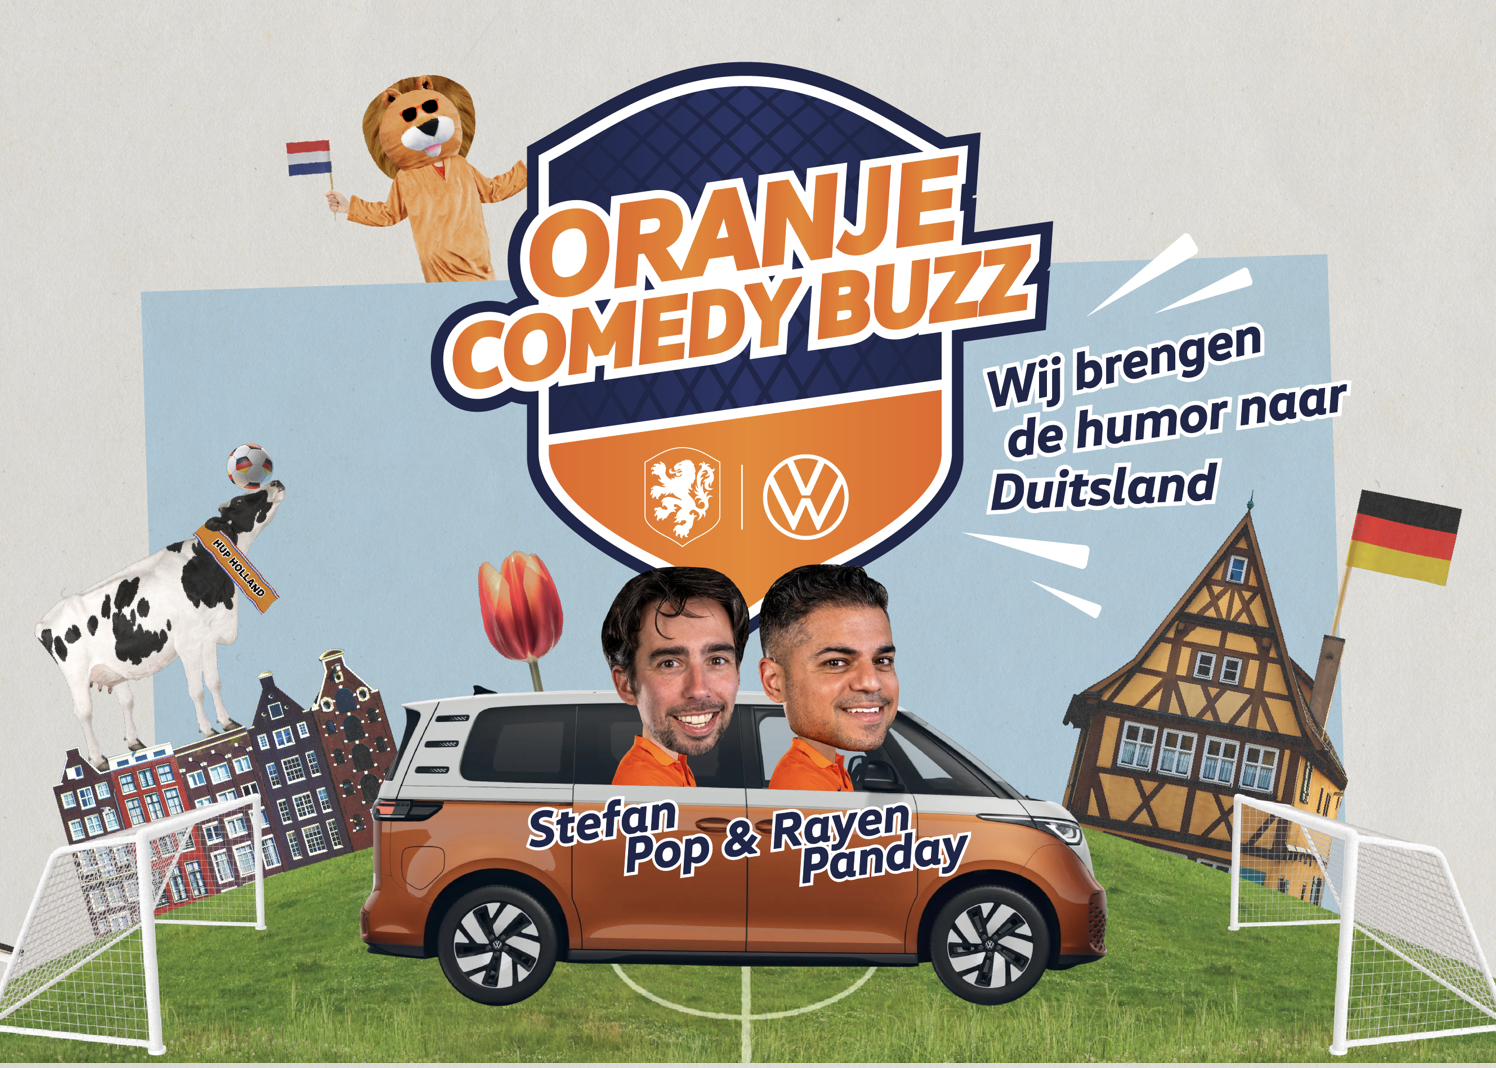 Volkswagen brengt EK humor naar Duitsland met Oranje Comedy Buzz